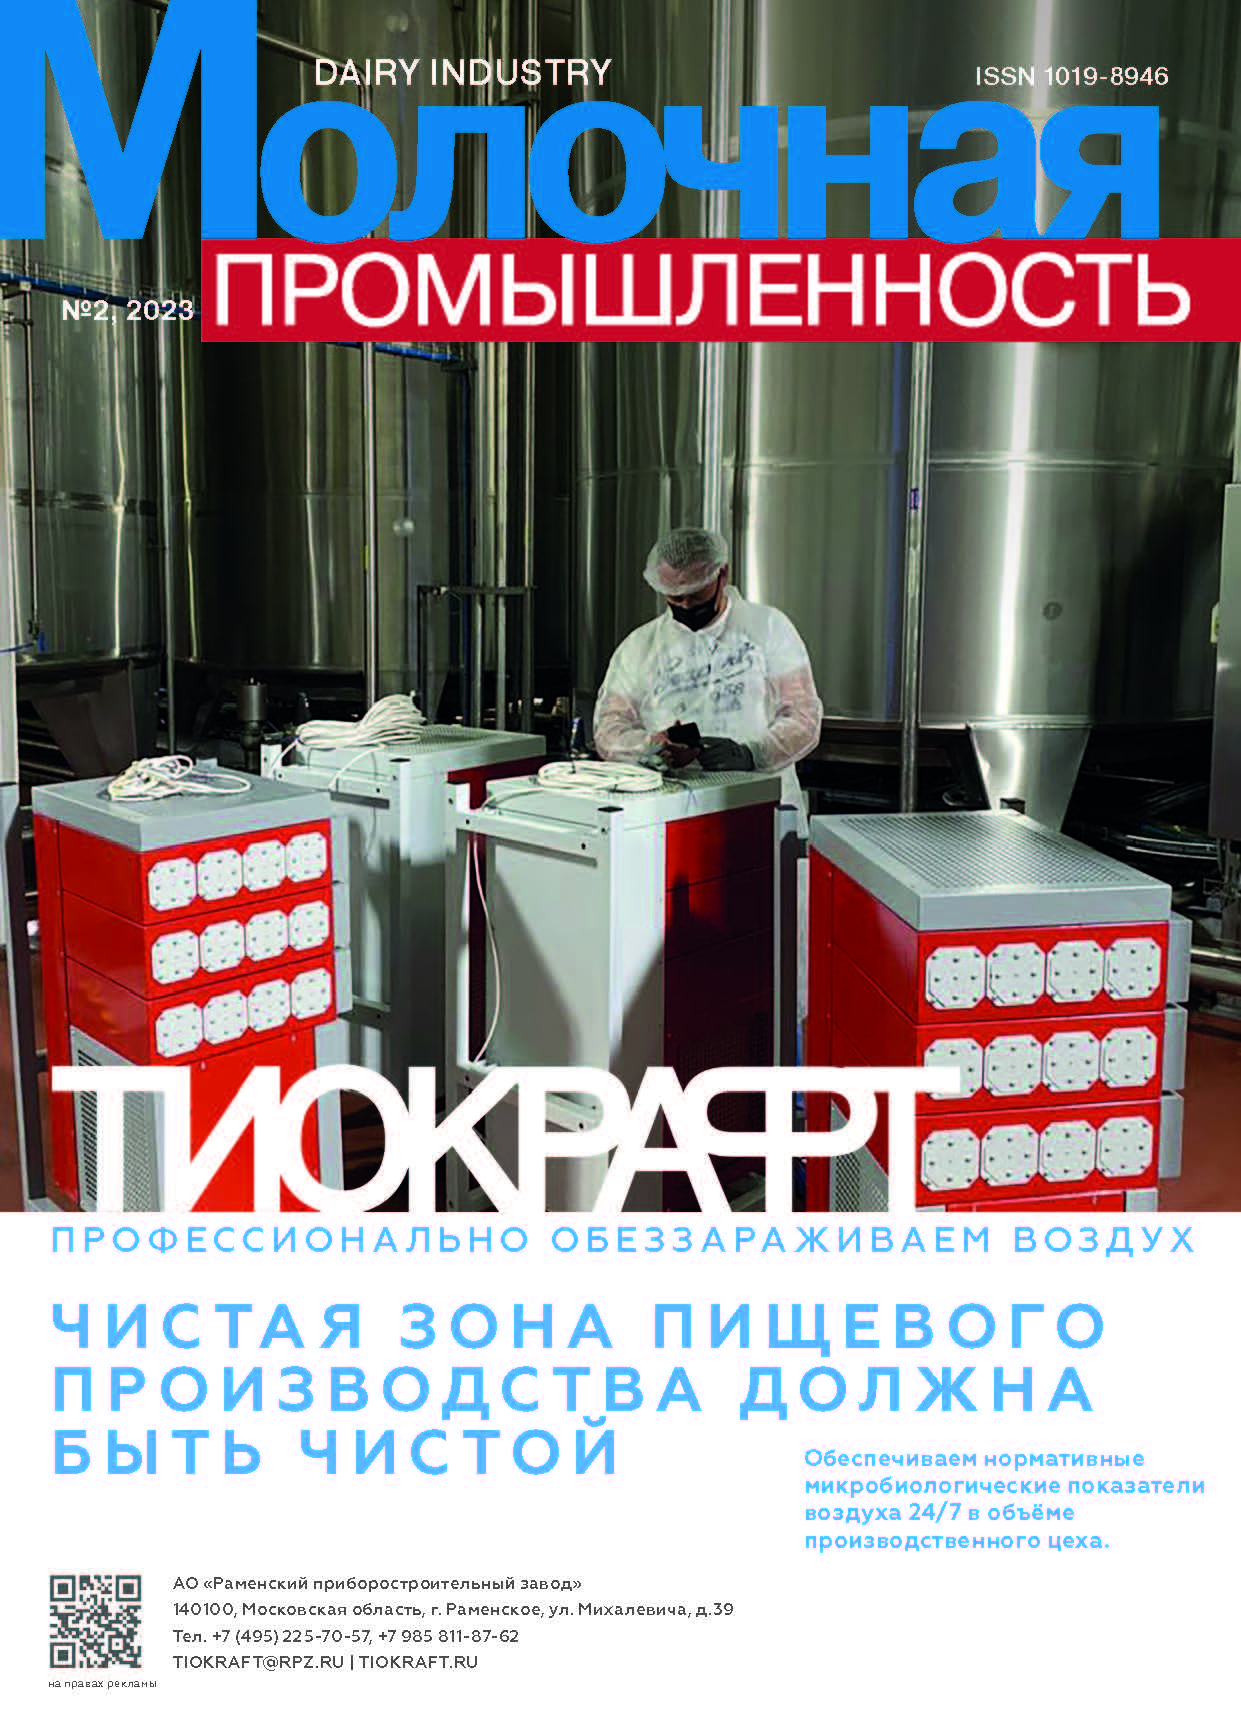             Повышение экспортного потенциала и конкурентоспособности молочной отрасли Республики Беларусь
    